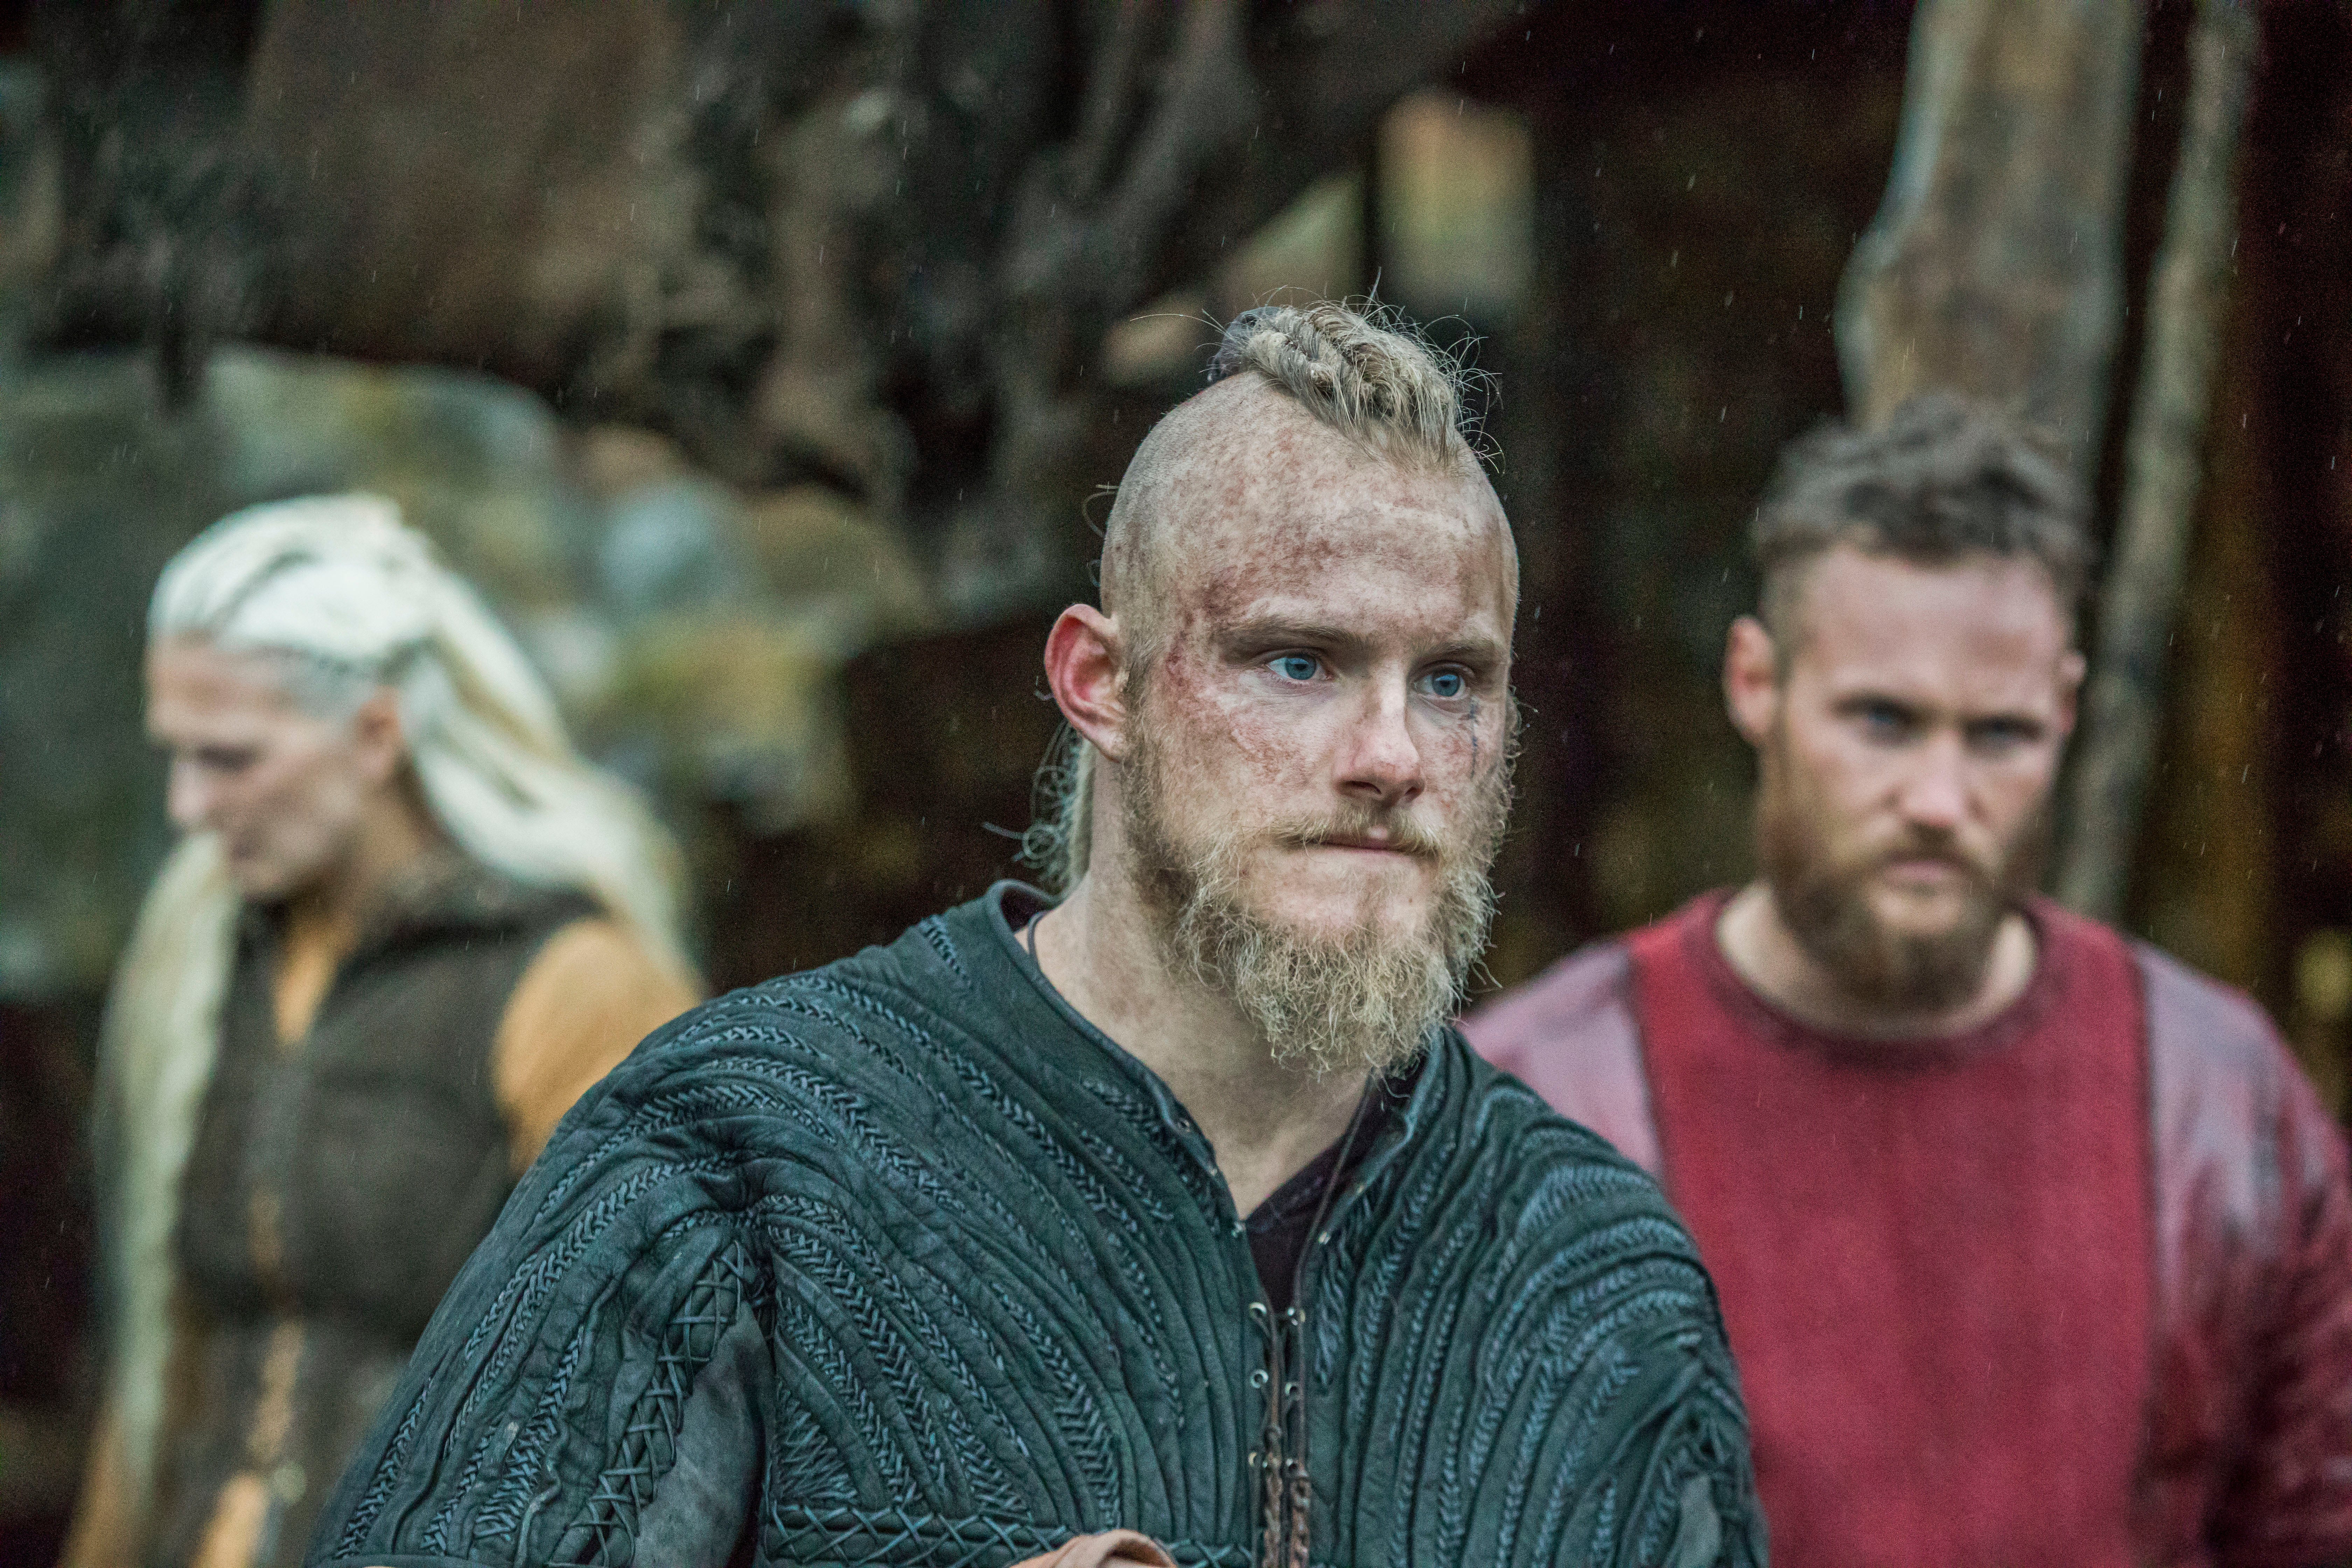 Bjorn Ironside sings country?' Vikings' Alexander Ludwig amazed by